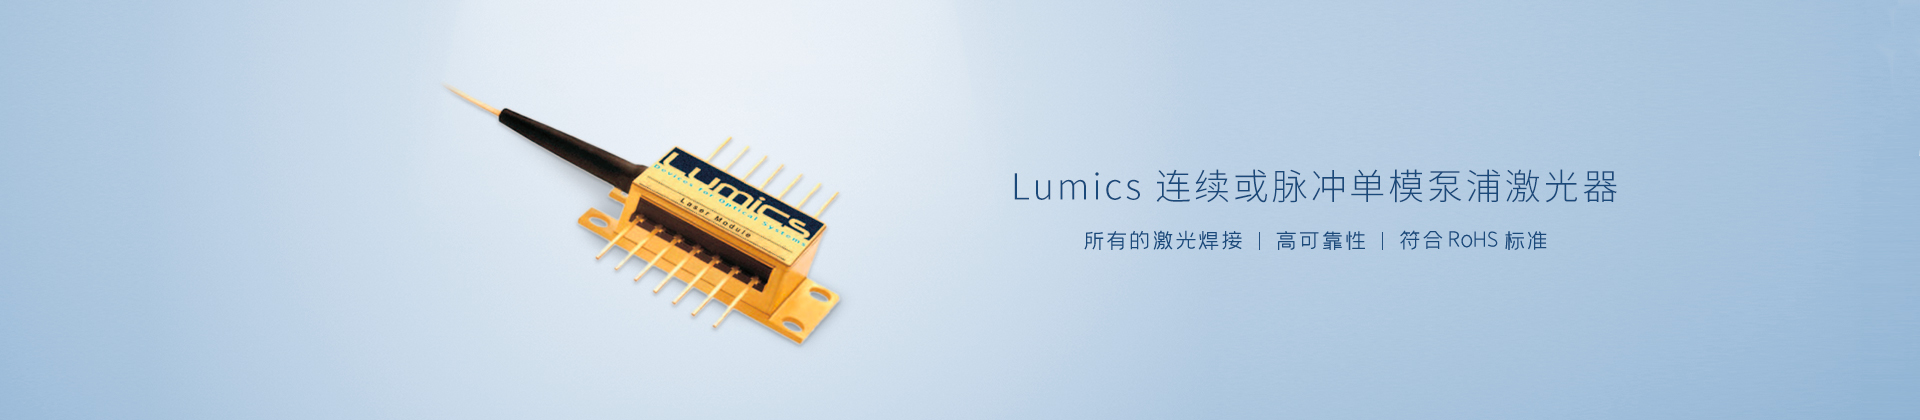 Lumics 连续或脉冲单模泵浦激光器